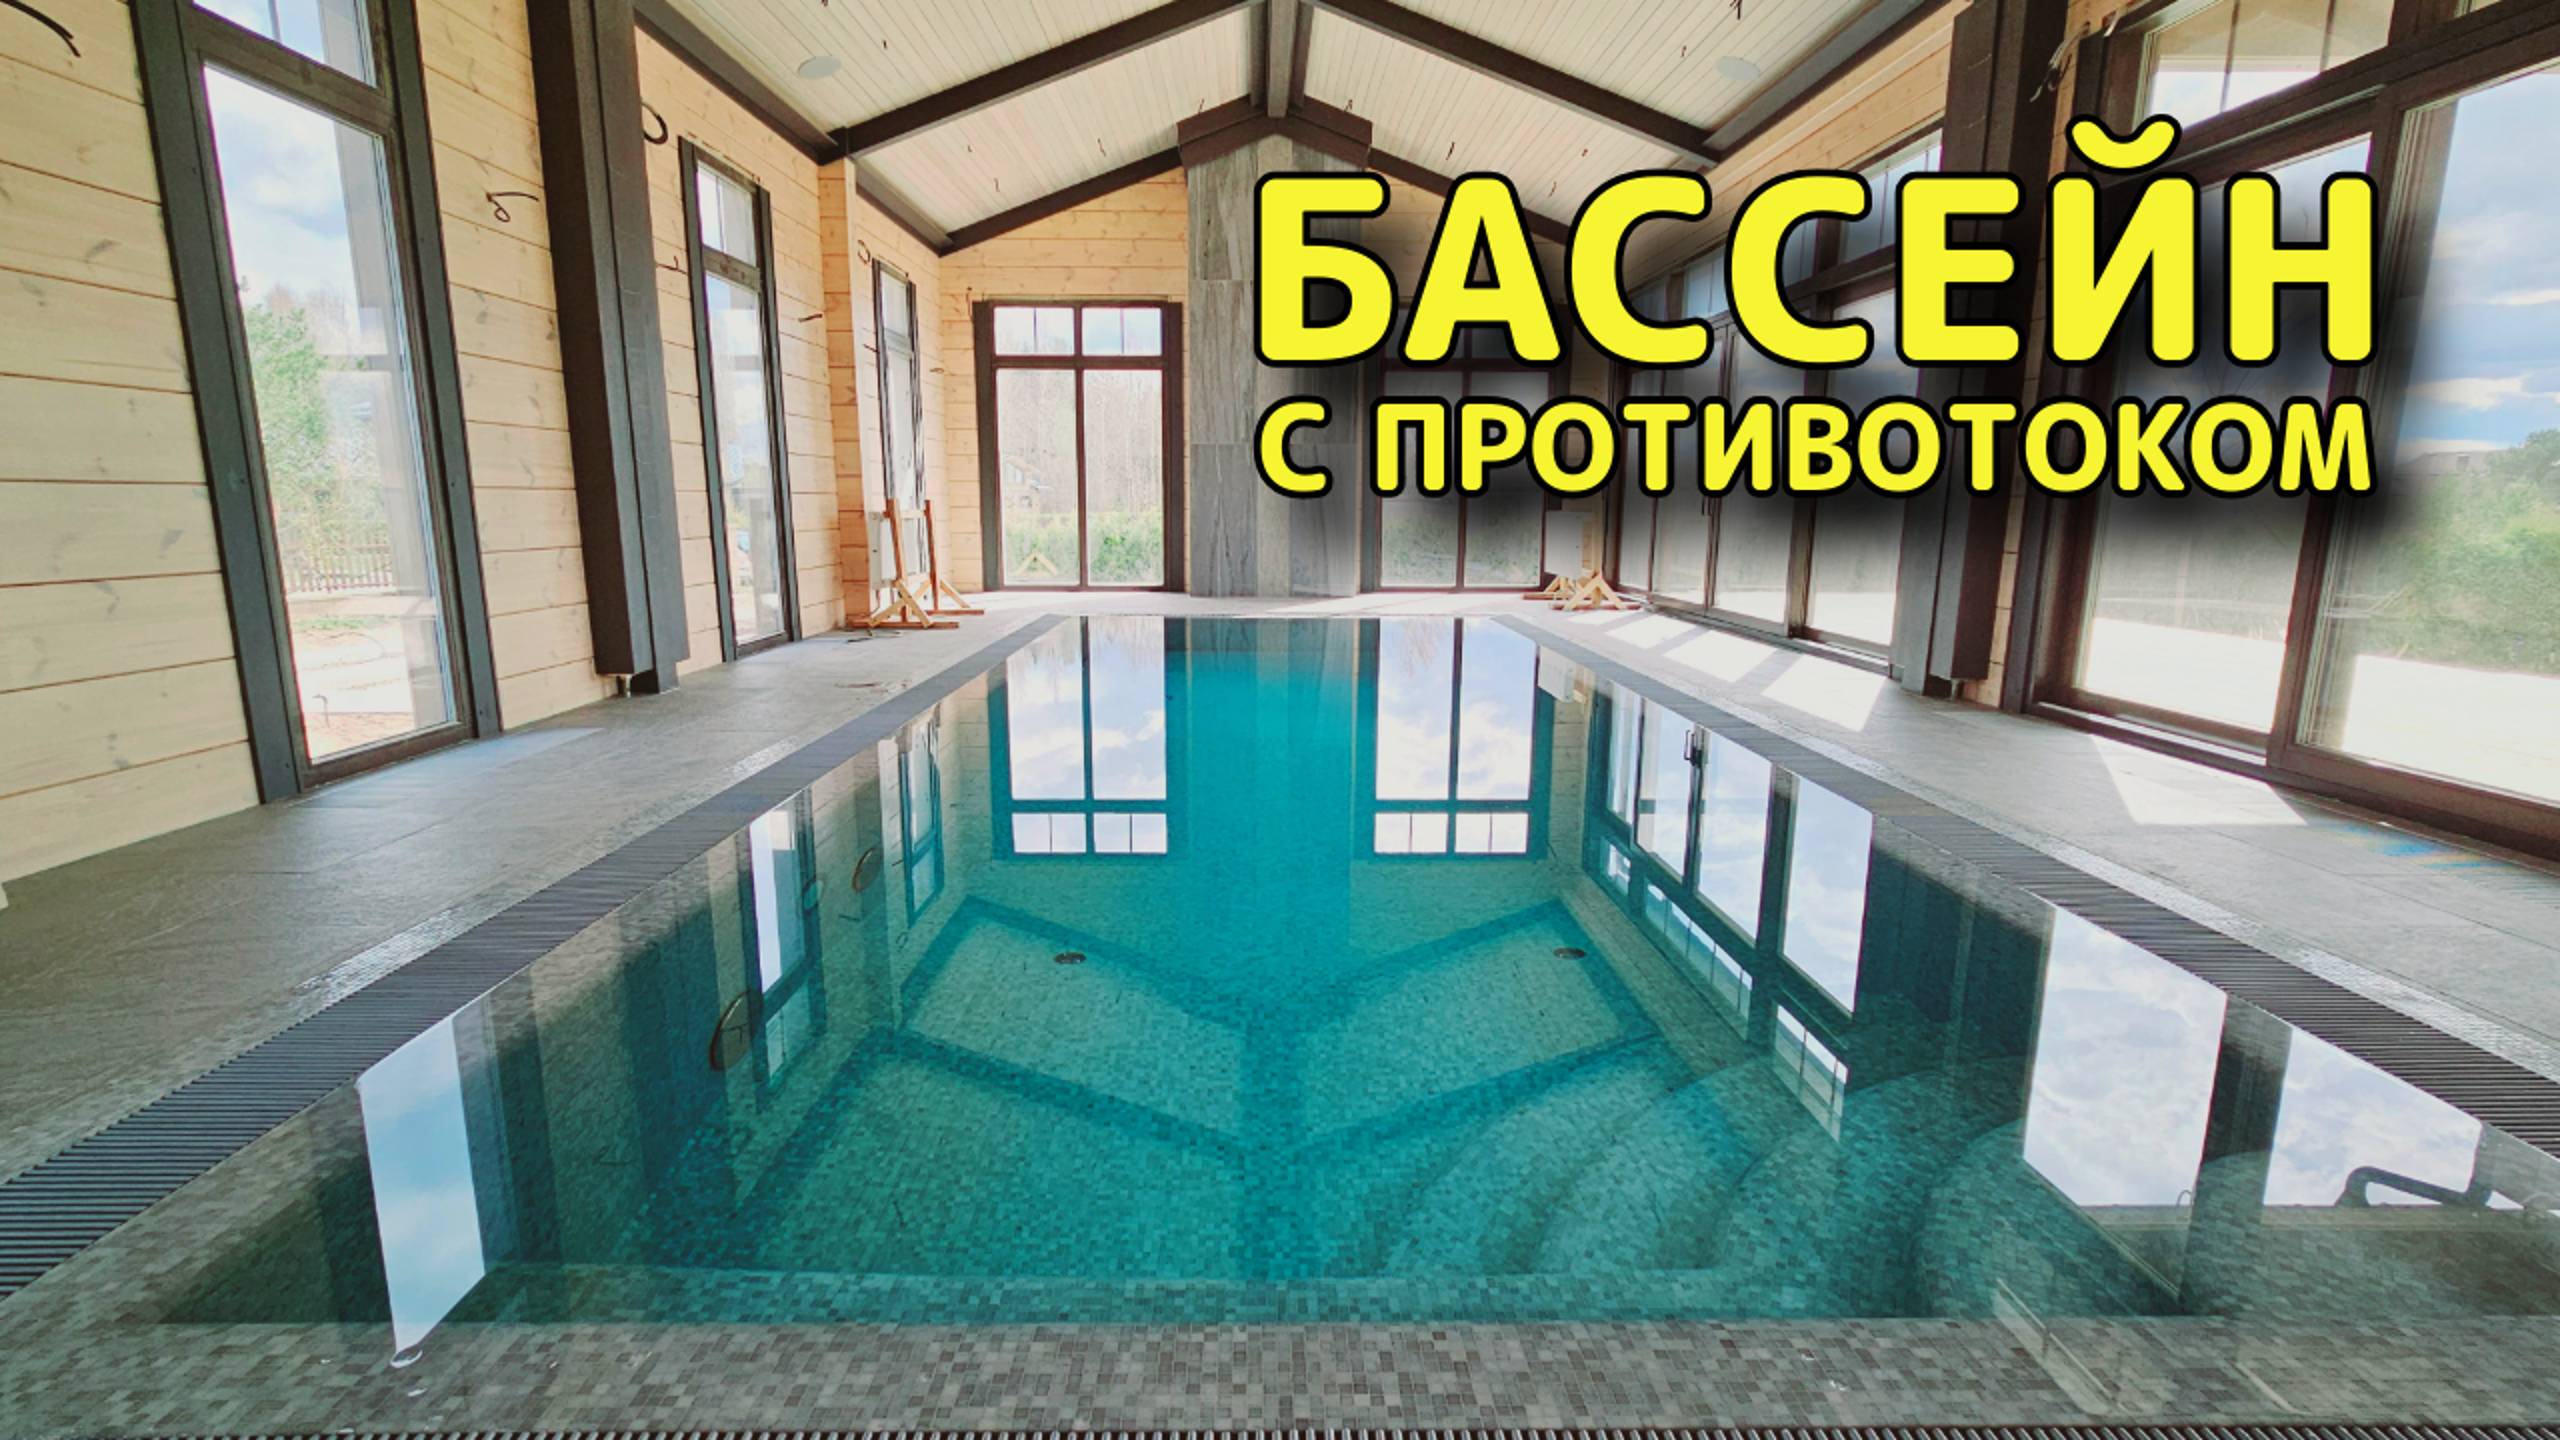 Переливной бассейн в Завидово #бассейн #бассейнподключ #строительствобассейнов